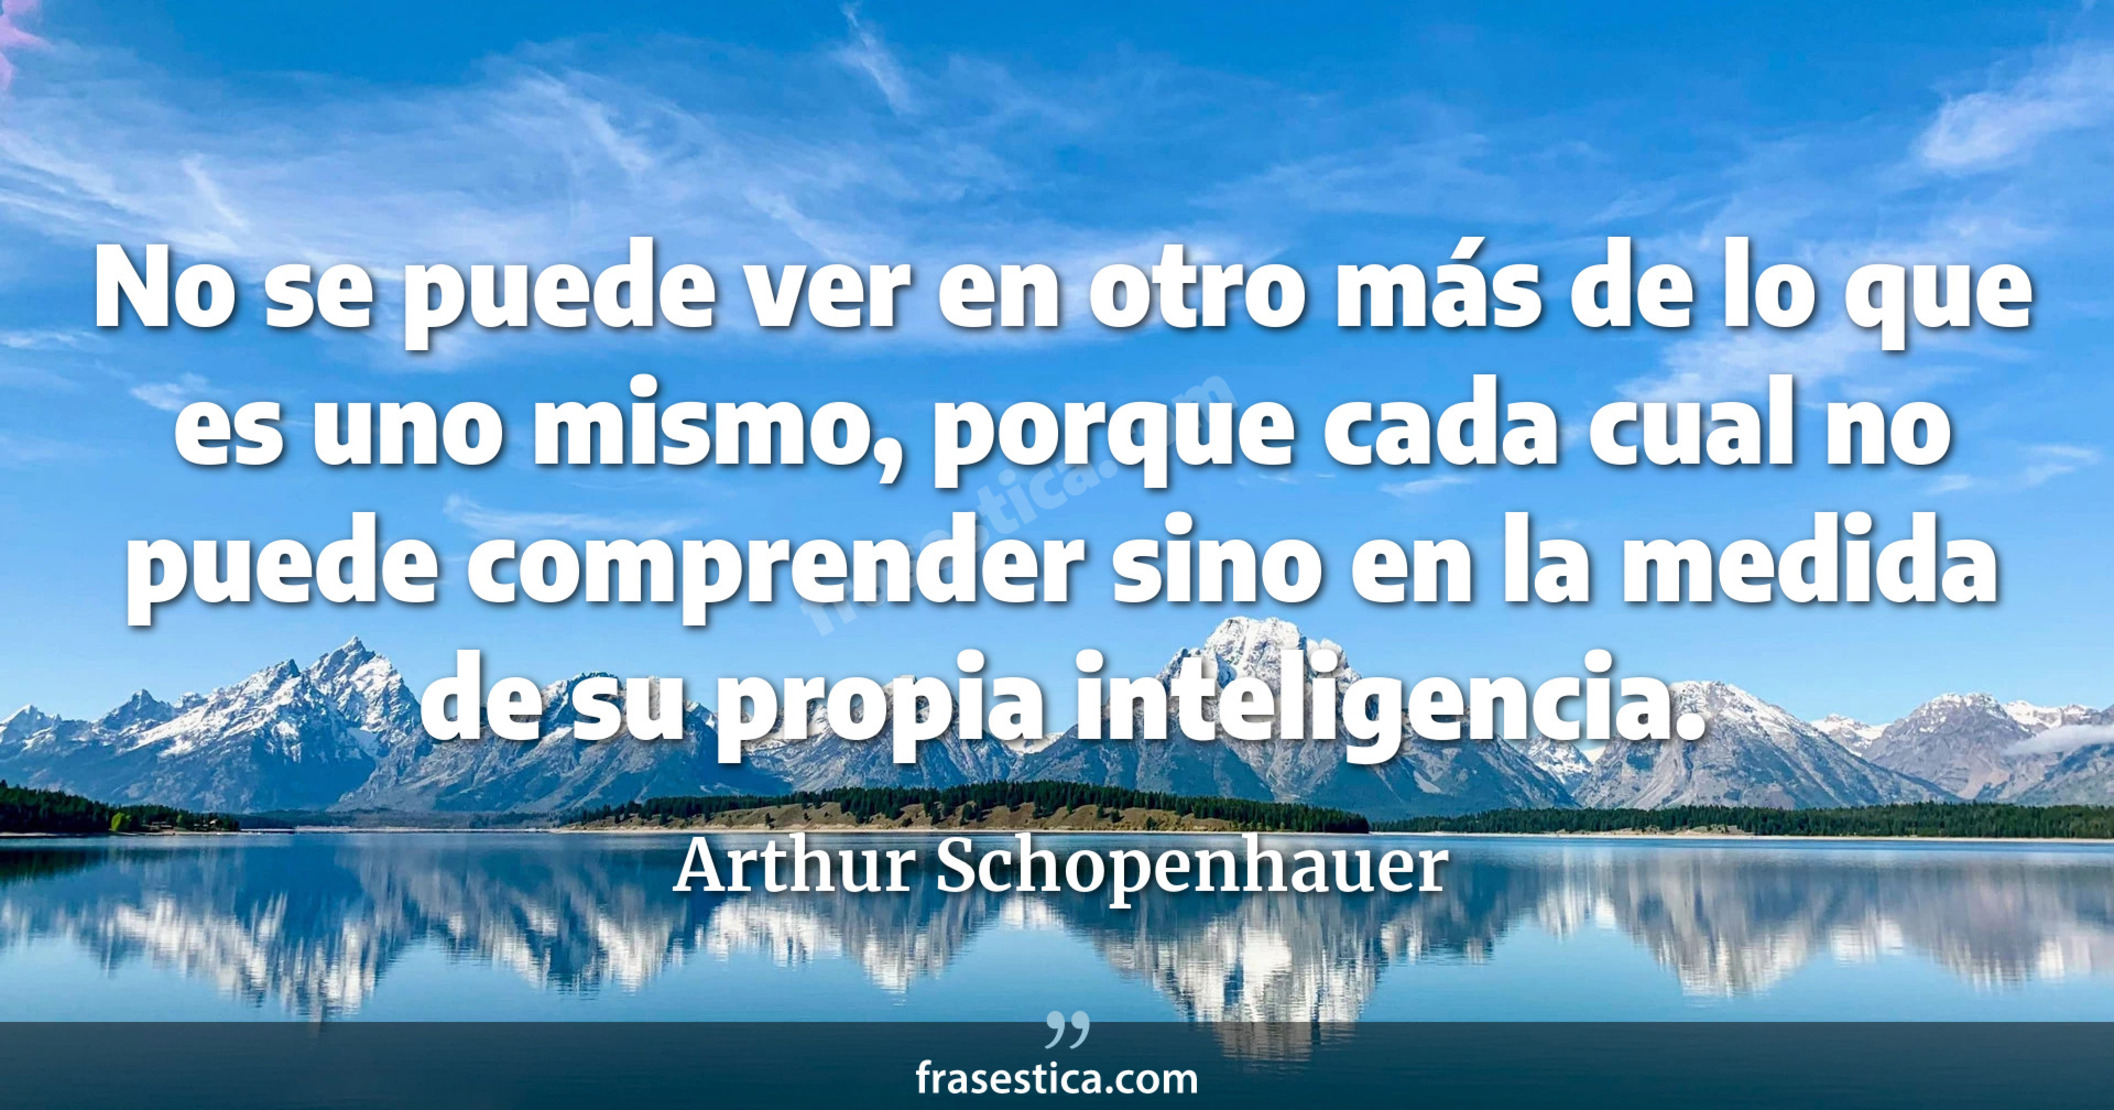 No se puede ver en otro más de lo que es uno mismo, porque cada cual no puede comprender sino en la medida de su propia inteligencia. - Arthur Schopenhauer